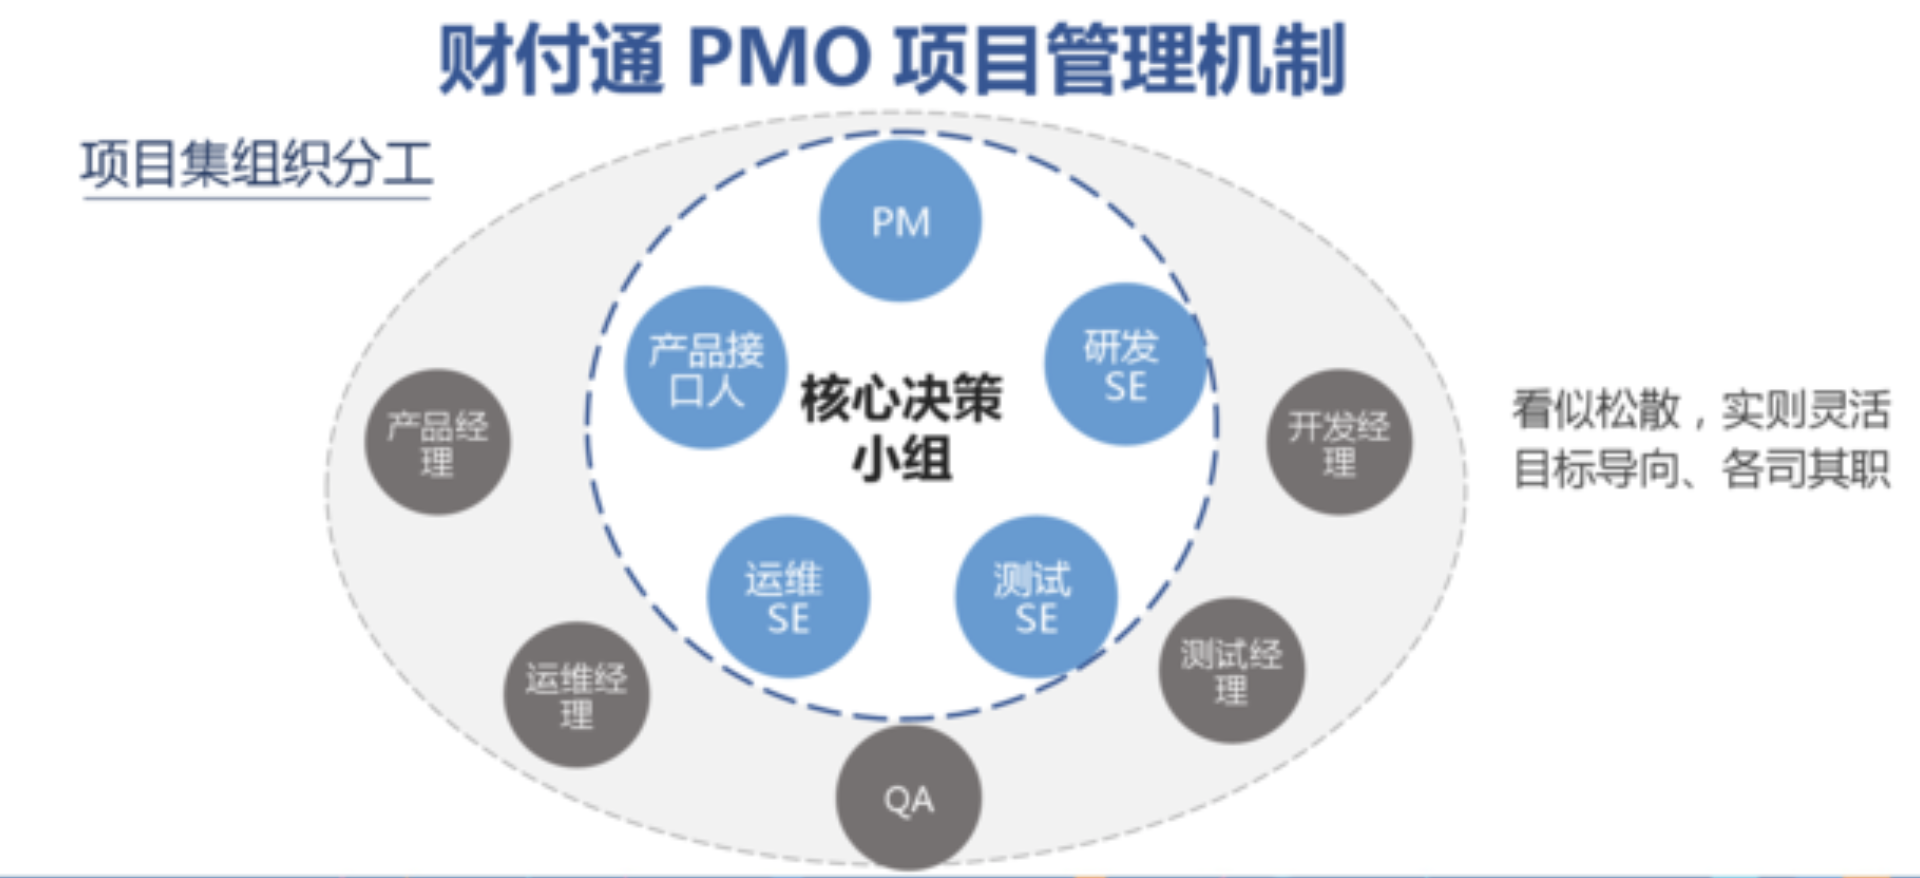 MPD：财付通——标准化项目管理与敏捷迭代的兼得——互联网PMO与项目管理实践  项目管理 管理 产品经理 产品 第2张